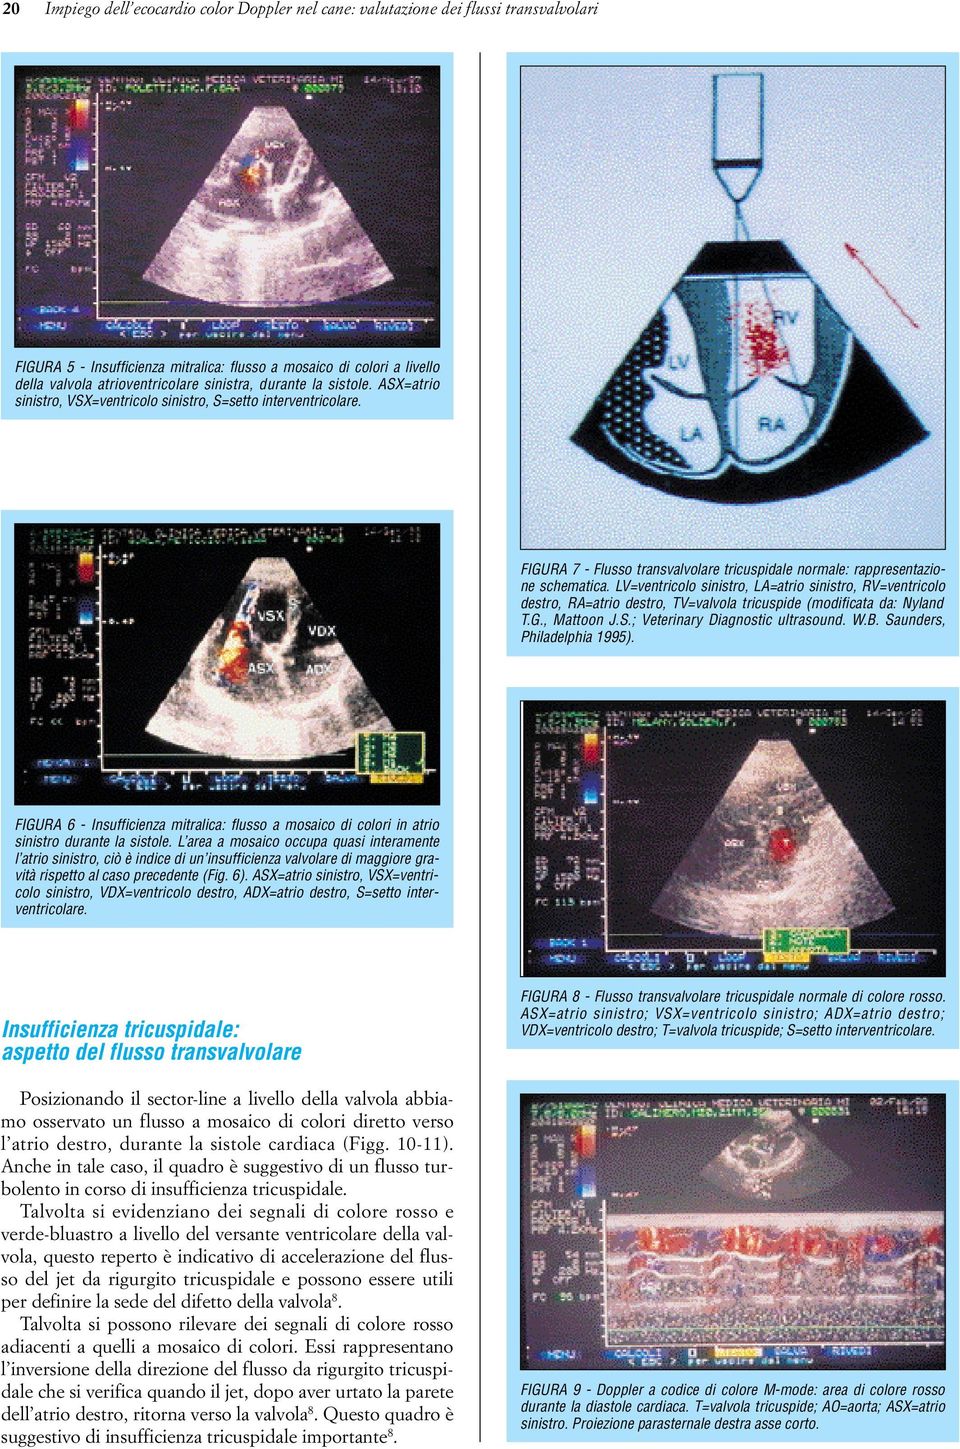 LV=ventricolo sinistro, LA=atrio sinistro, RV=ventricolo destro, RA=atrio destro, TV=valvola tricuspide (modificata da: Nyland T.G., Mattoon J.S.; Veterinary Diagnostic ultrasound. W.B.